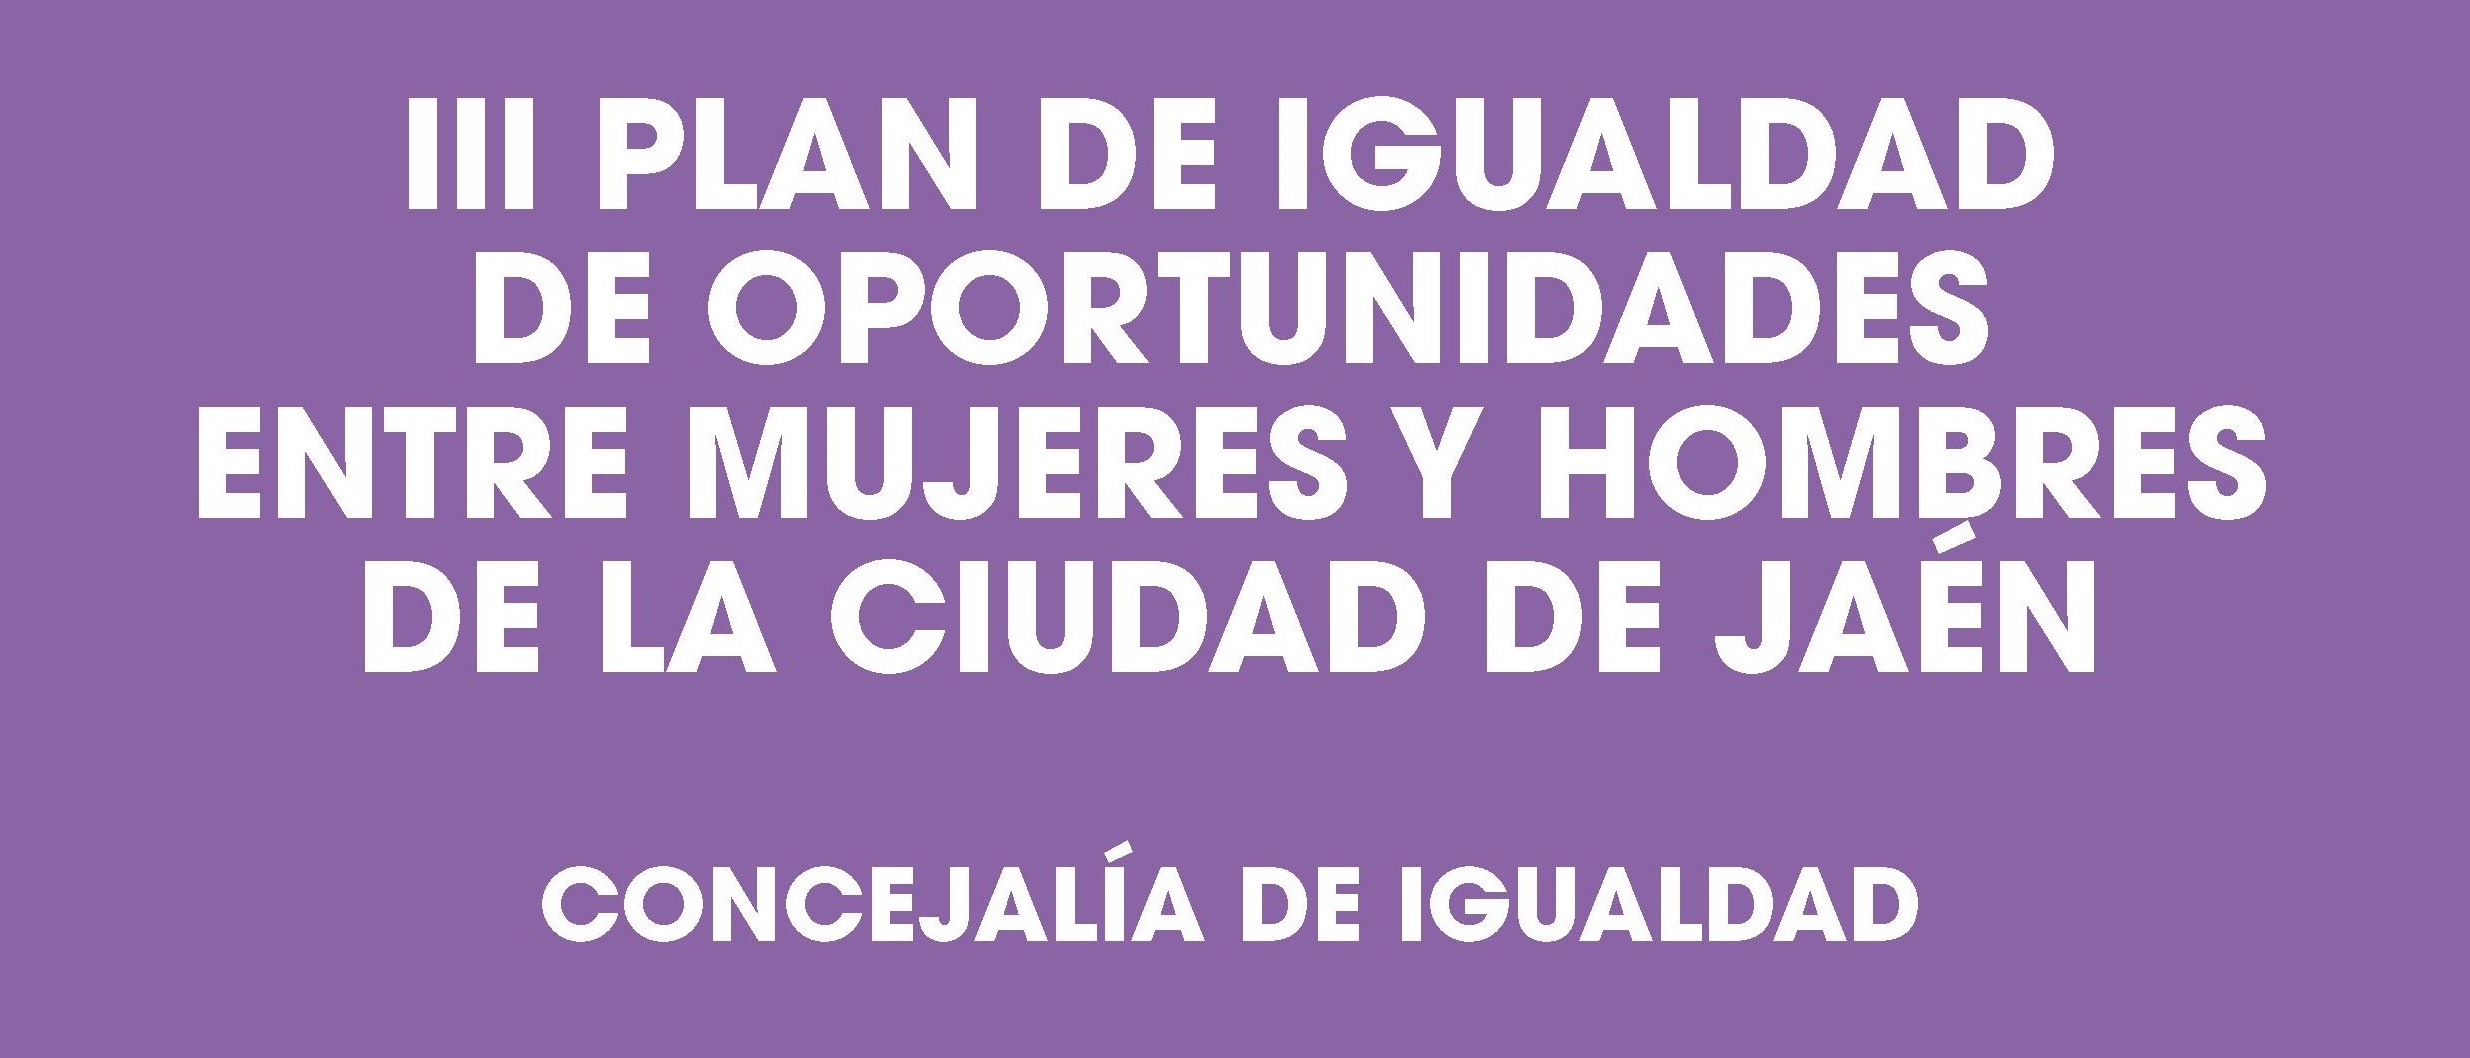 Debate social en torno al  III Plan de Igualdad de Oportunidades entre Mujeres y Hombres de la Ciudad de Jaén.  